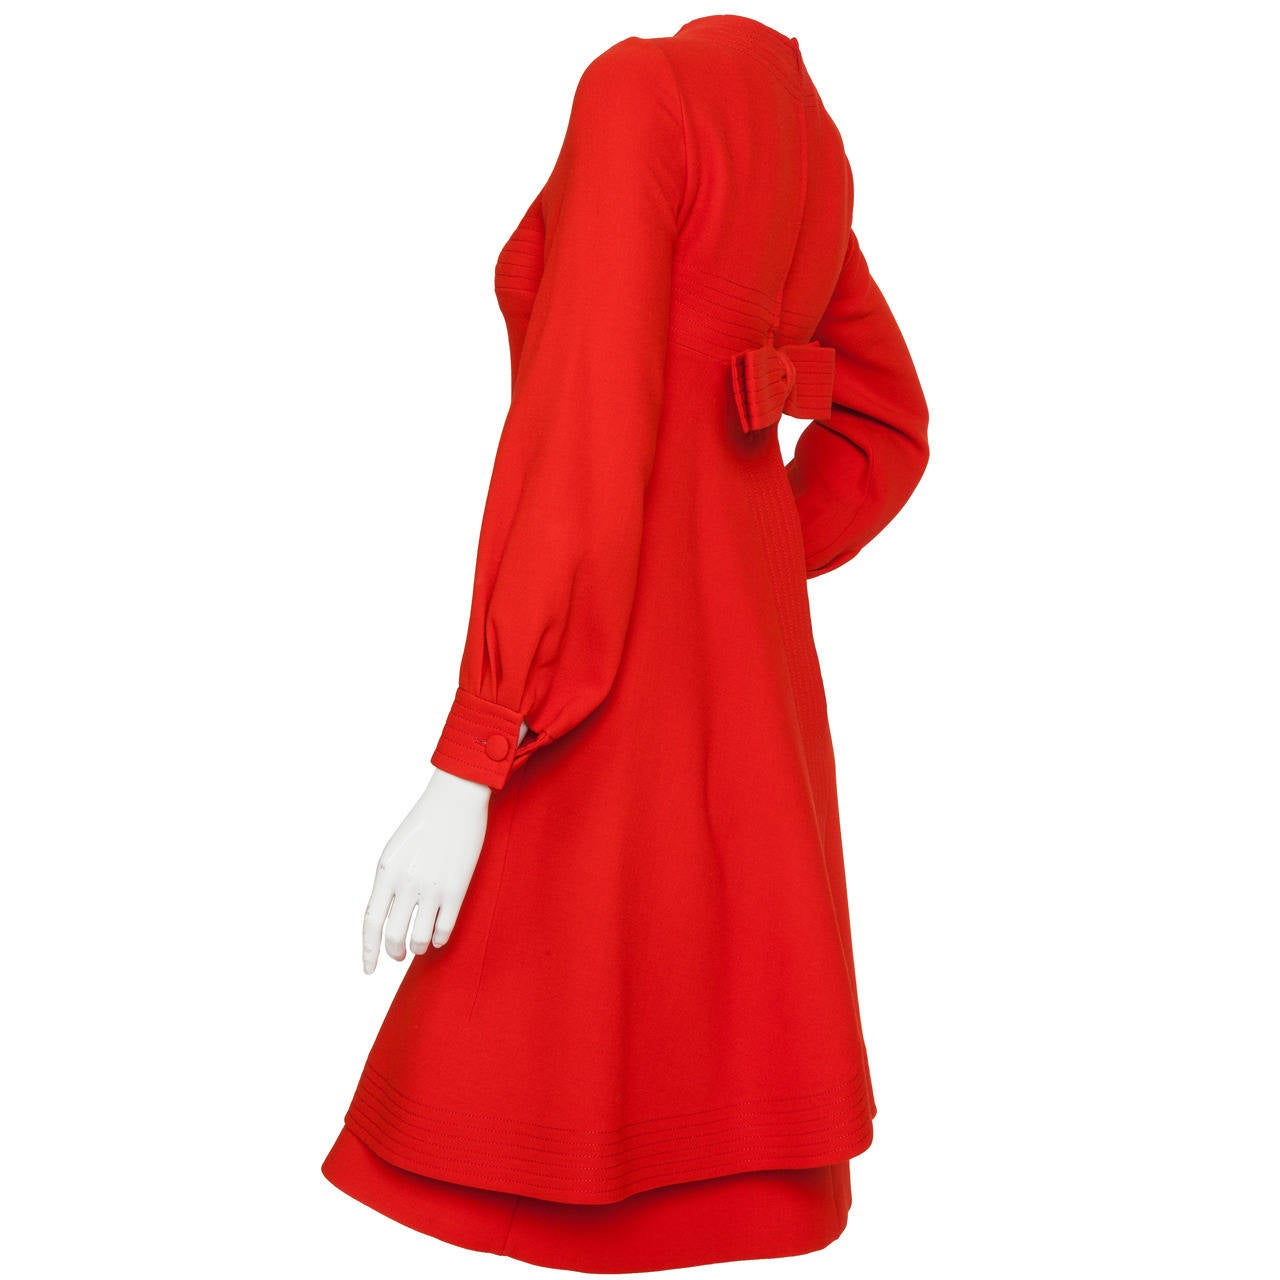 Langärmeliges Kleid aus tomatenroter Wolle von Pierre Cardin (um 1970) mit kanalgesticktem Motiv. Das Kleid in A-Linie hat einen acht Zentimeter langen Schlitz in der vorderen Mitte knapp über dem Saum, dekorative Taschen mit künstlichen Schlitzen